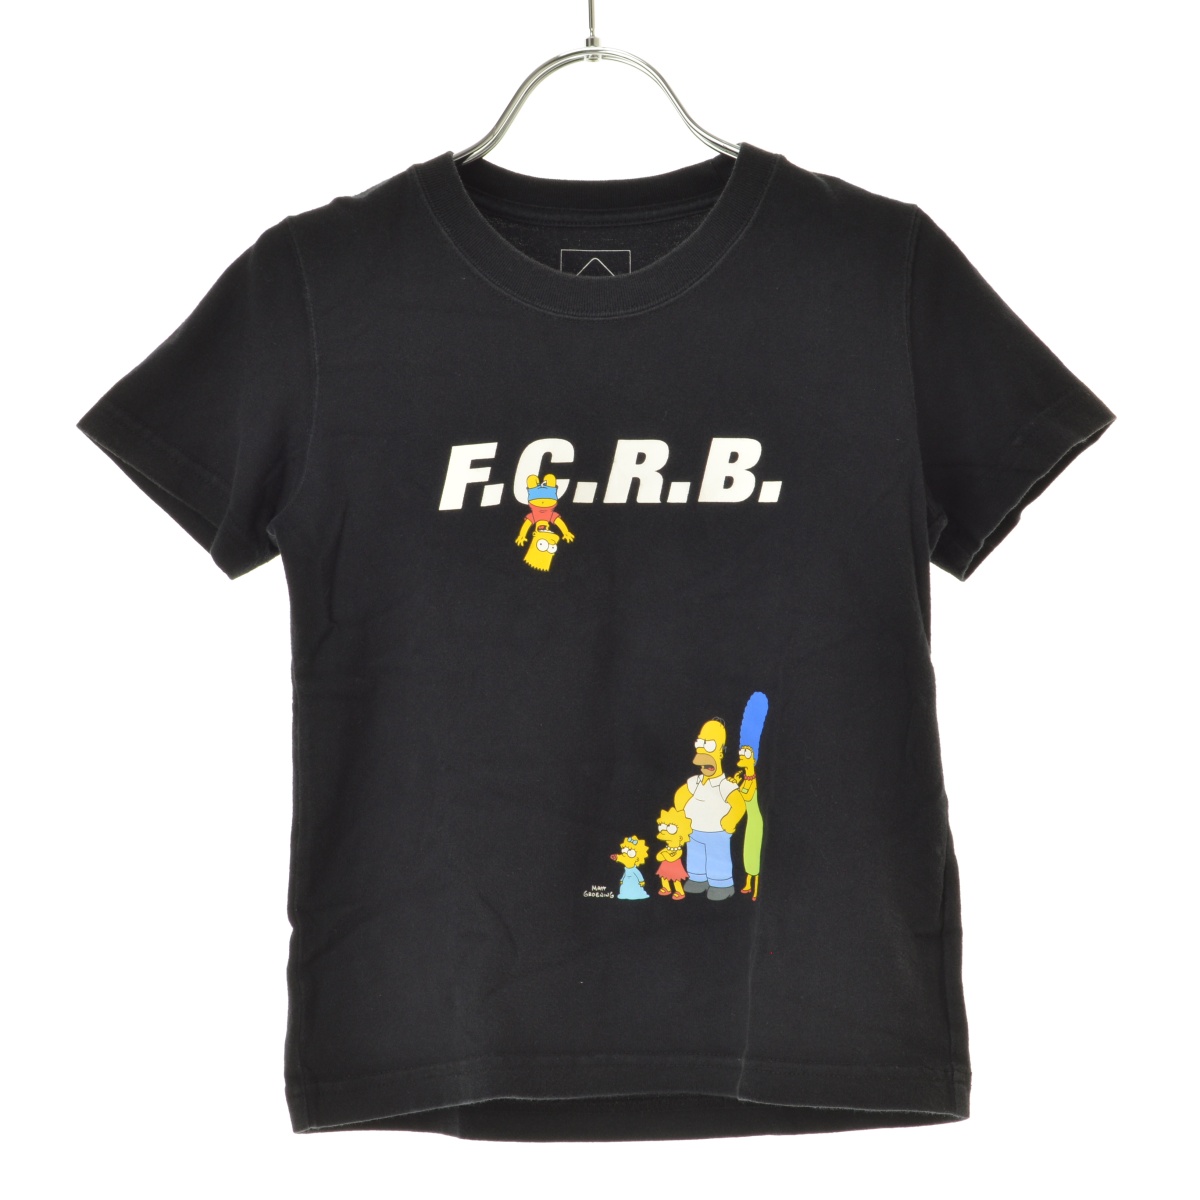 F.C.R.B. × THE SIMPSONS / エフシーアールビー × THE SIMPSONS 19SS FAMILY TEE 半袖Tシャツ  -ブランド古着の買取販売カンフル